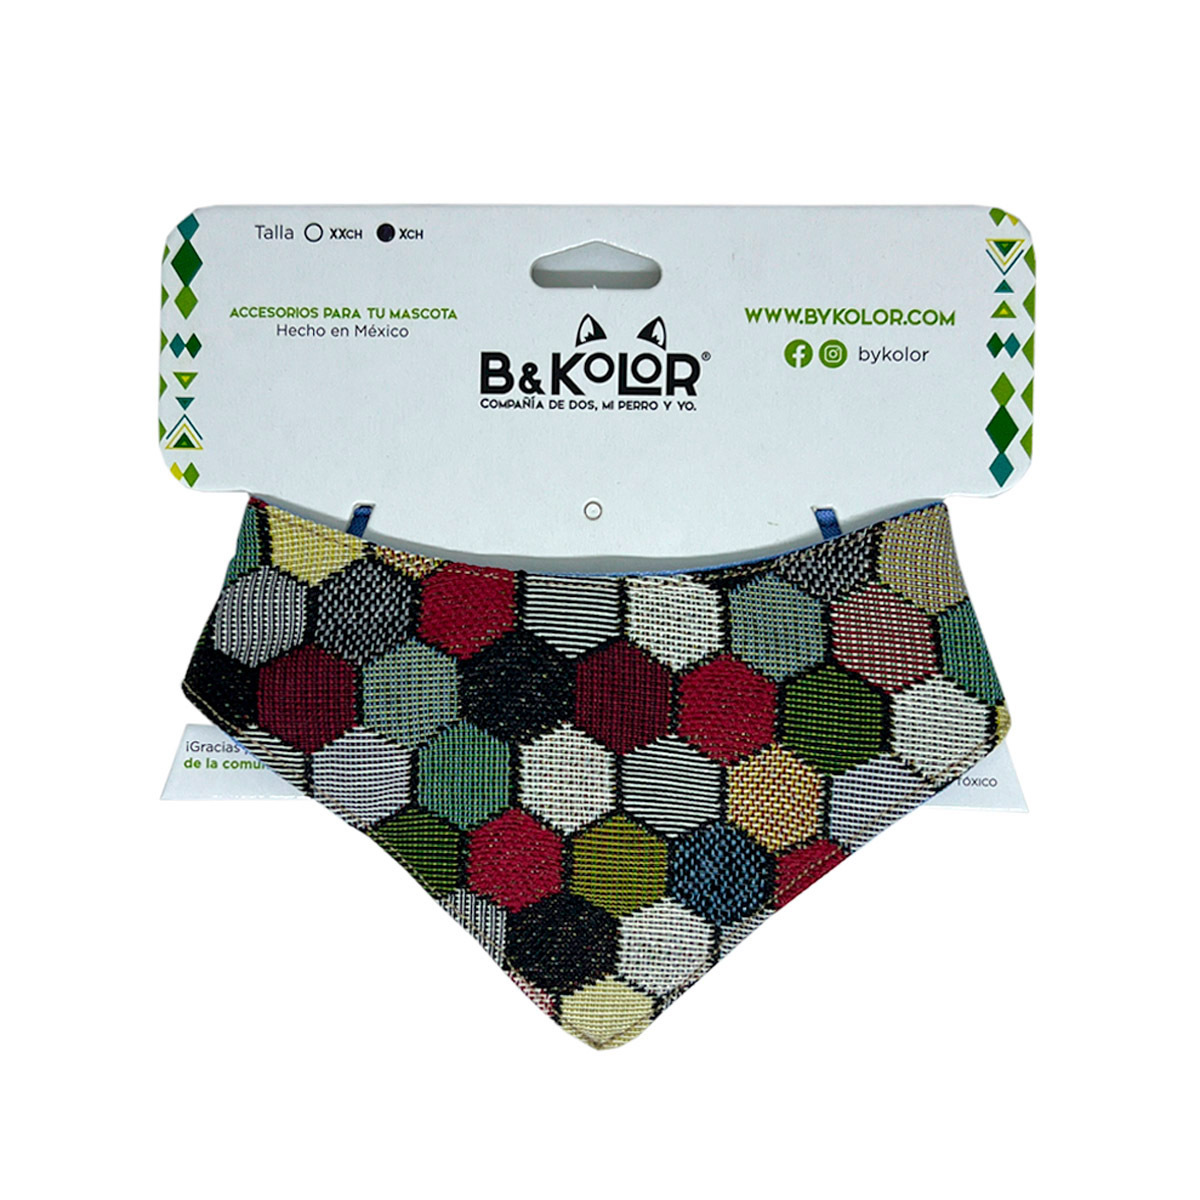 B&Kolor Bandana Artesanal Diseño Geométrico Multicolor para Perro, X-Chico